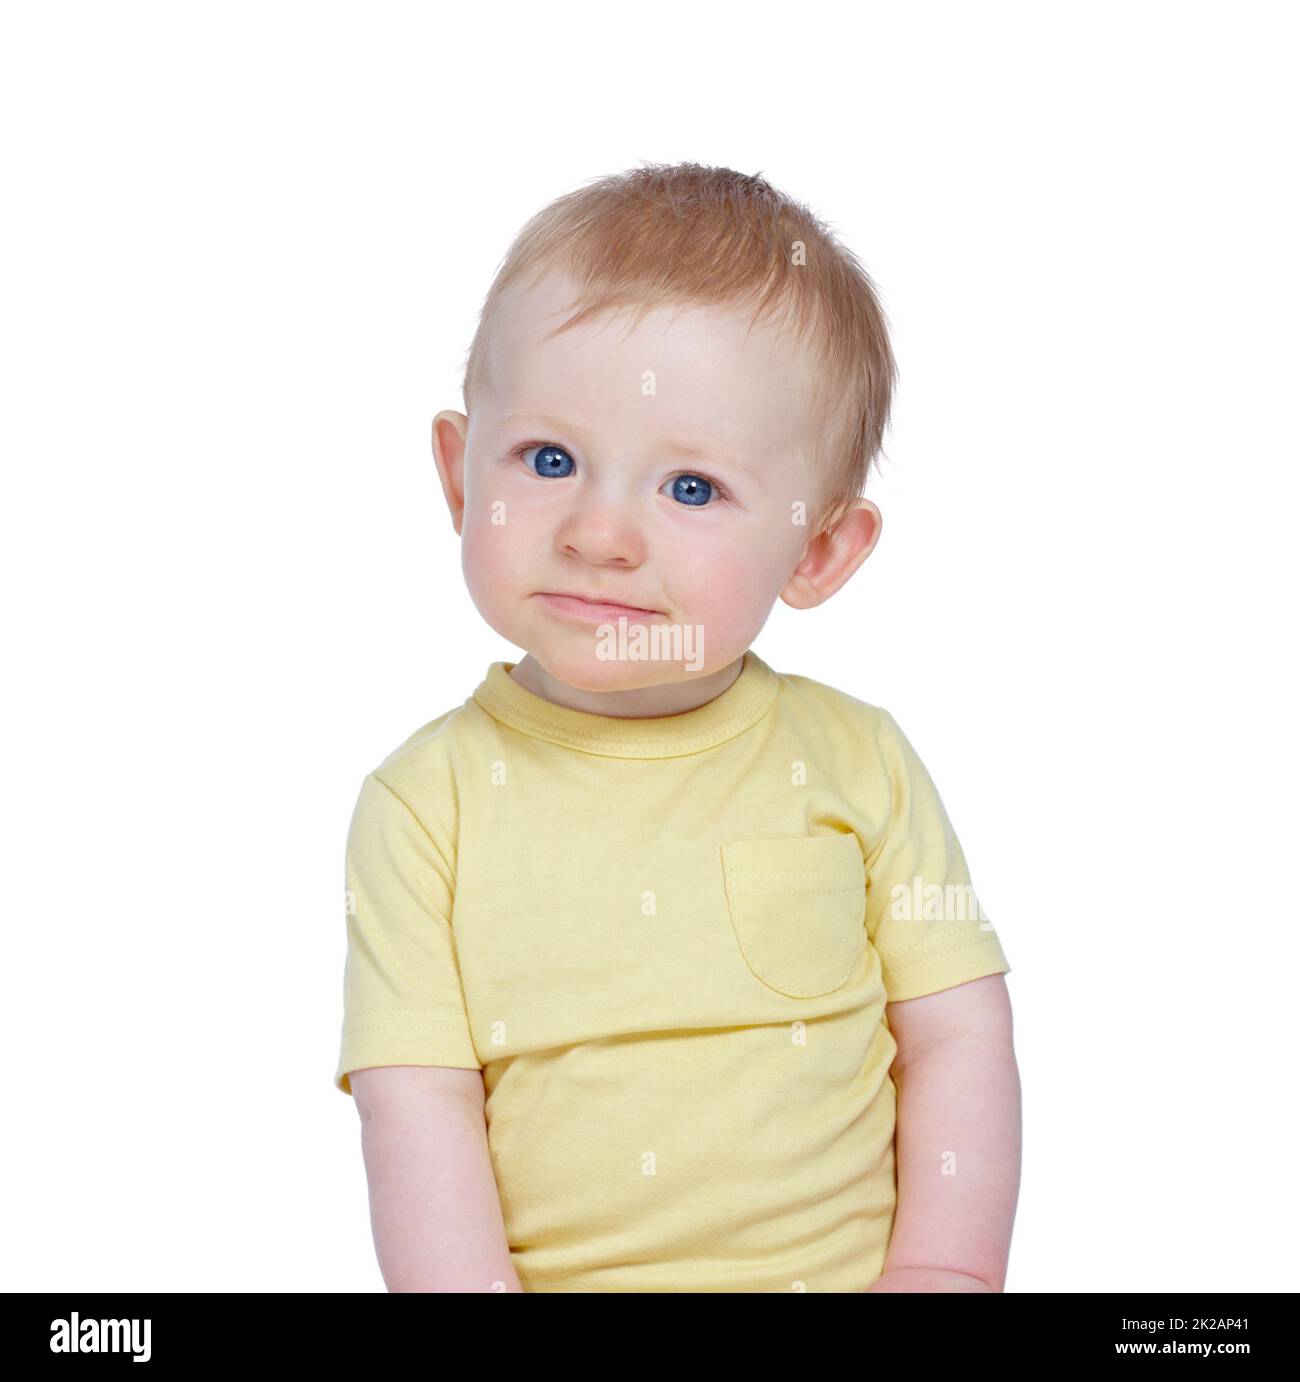 Neugieriges Kind. Studioaufnahme eines niedlichen Jungen in einem gelben Hemd. Stockfoto